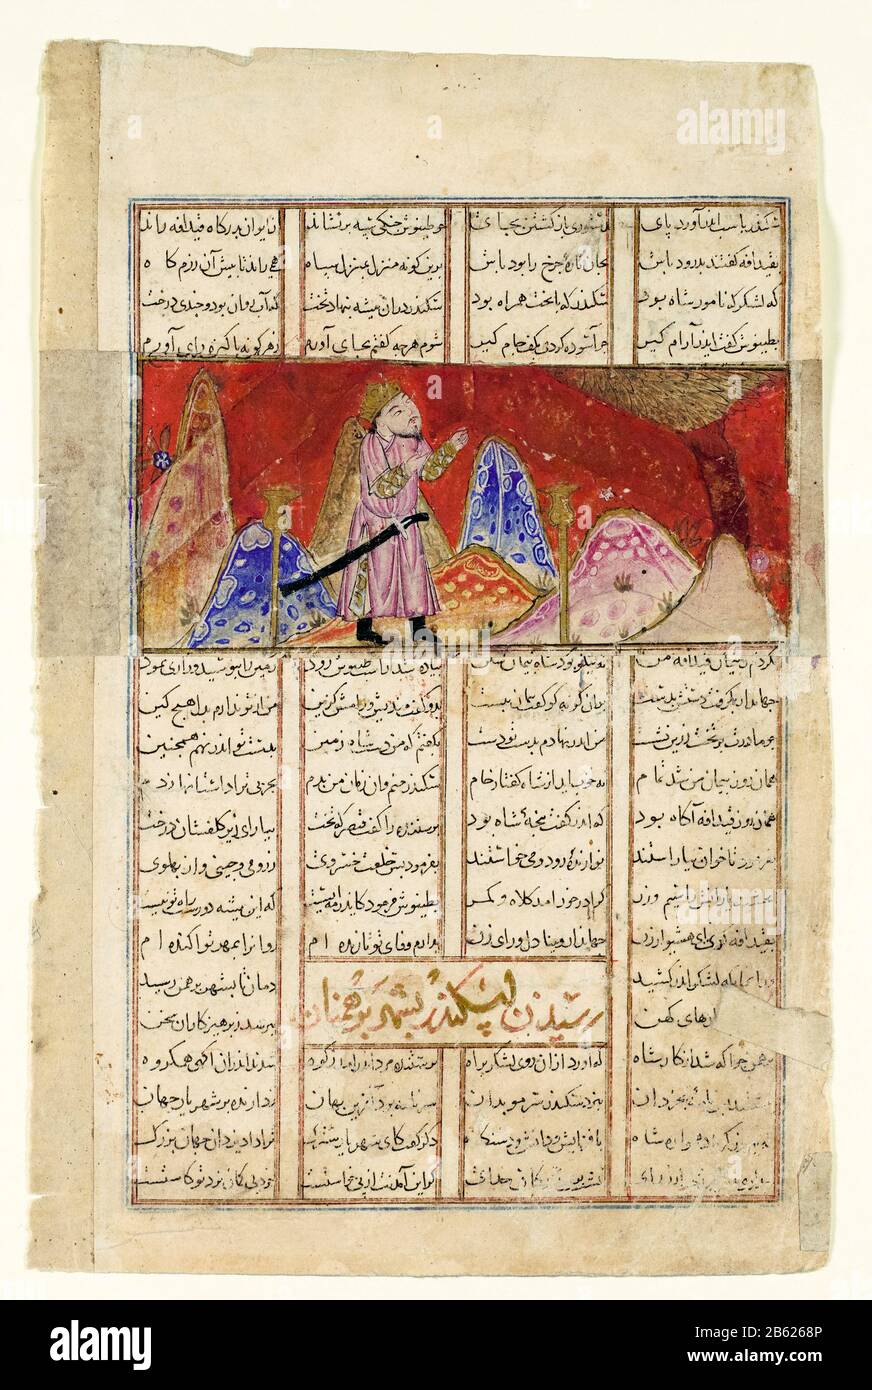 Iskandar (Alessandro Magno) parla con l'uccello sulla montagna, illustrazione di Abu'l Qasim Firdausi, circa 1330-1340 Foto Stock